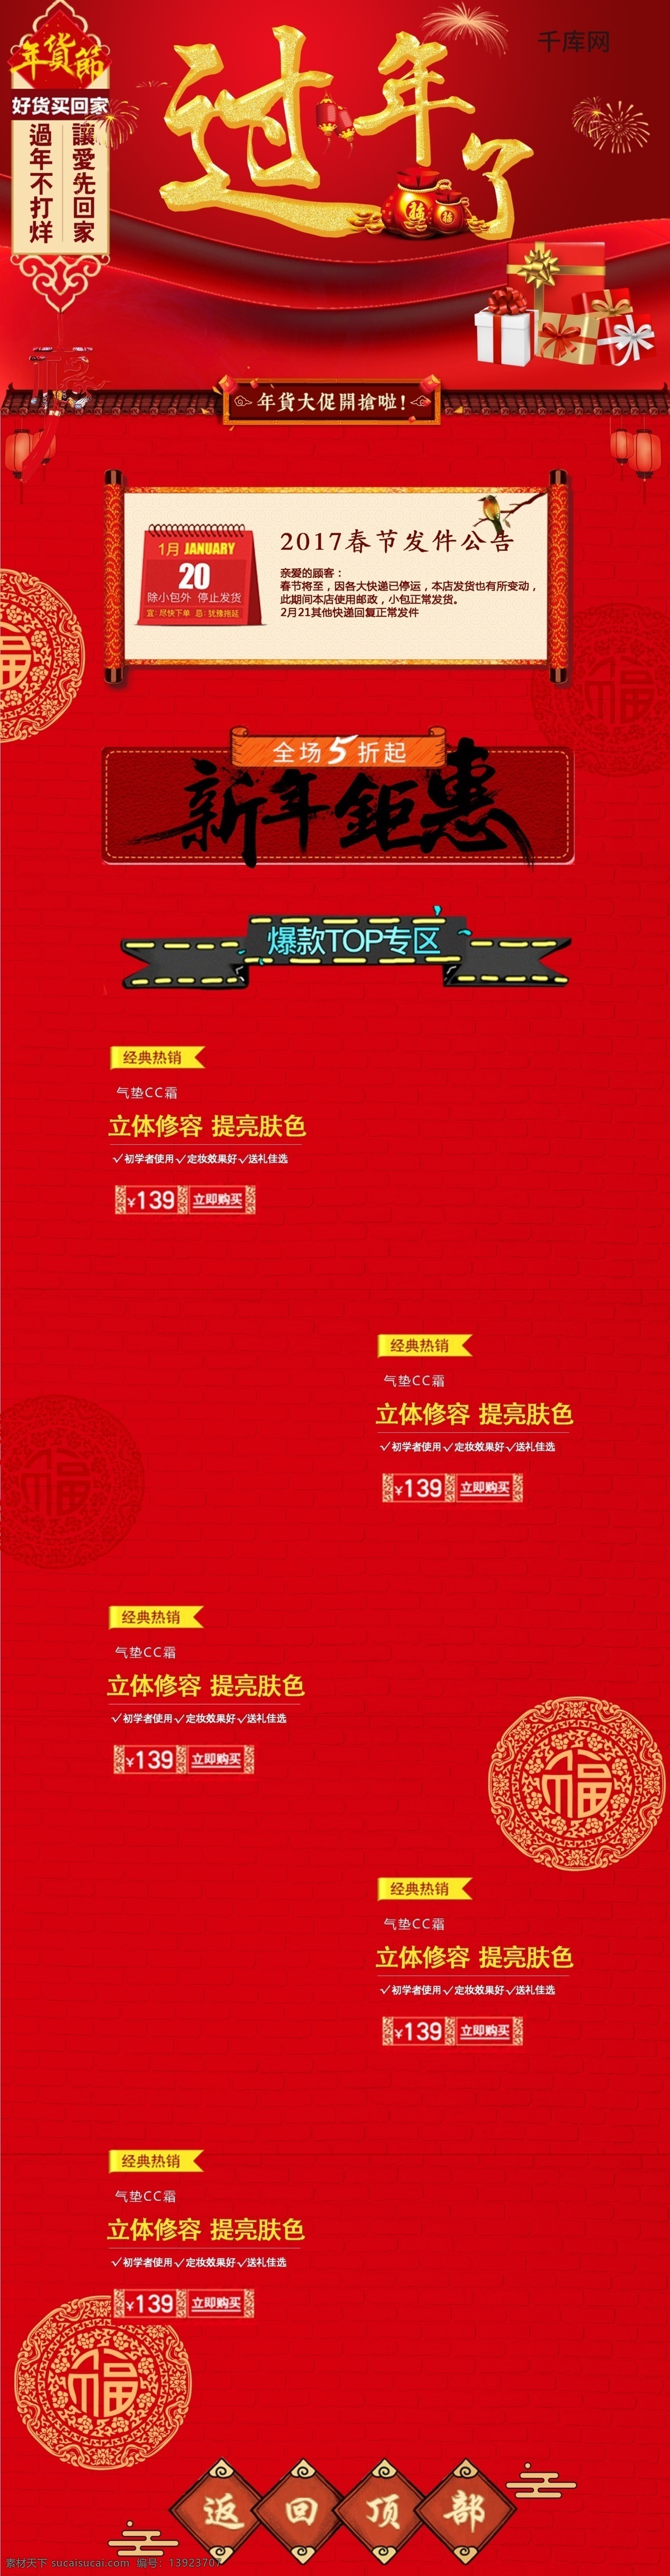 电商 淘宝 过年 年货 大 促 开枪 中国 红 元素 中国红元素 春节公告